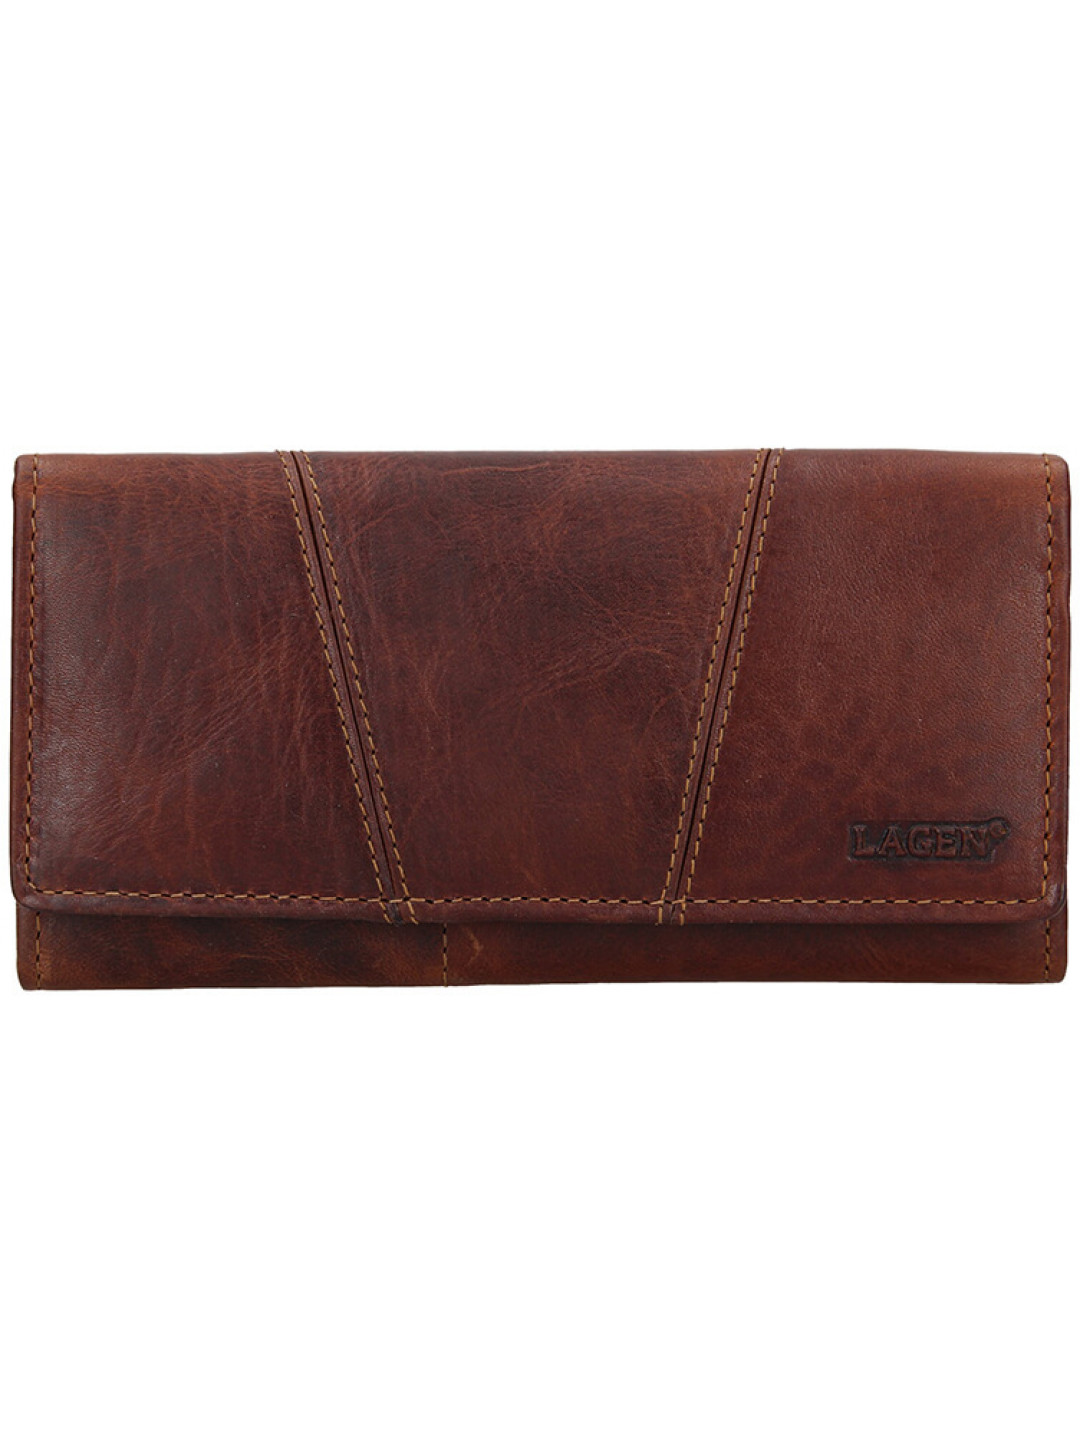 Lagen Dámská kožená peněženka PWL-388 M BRN